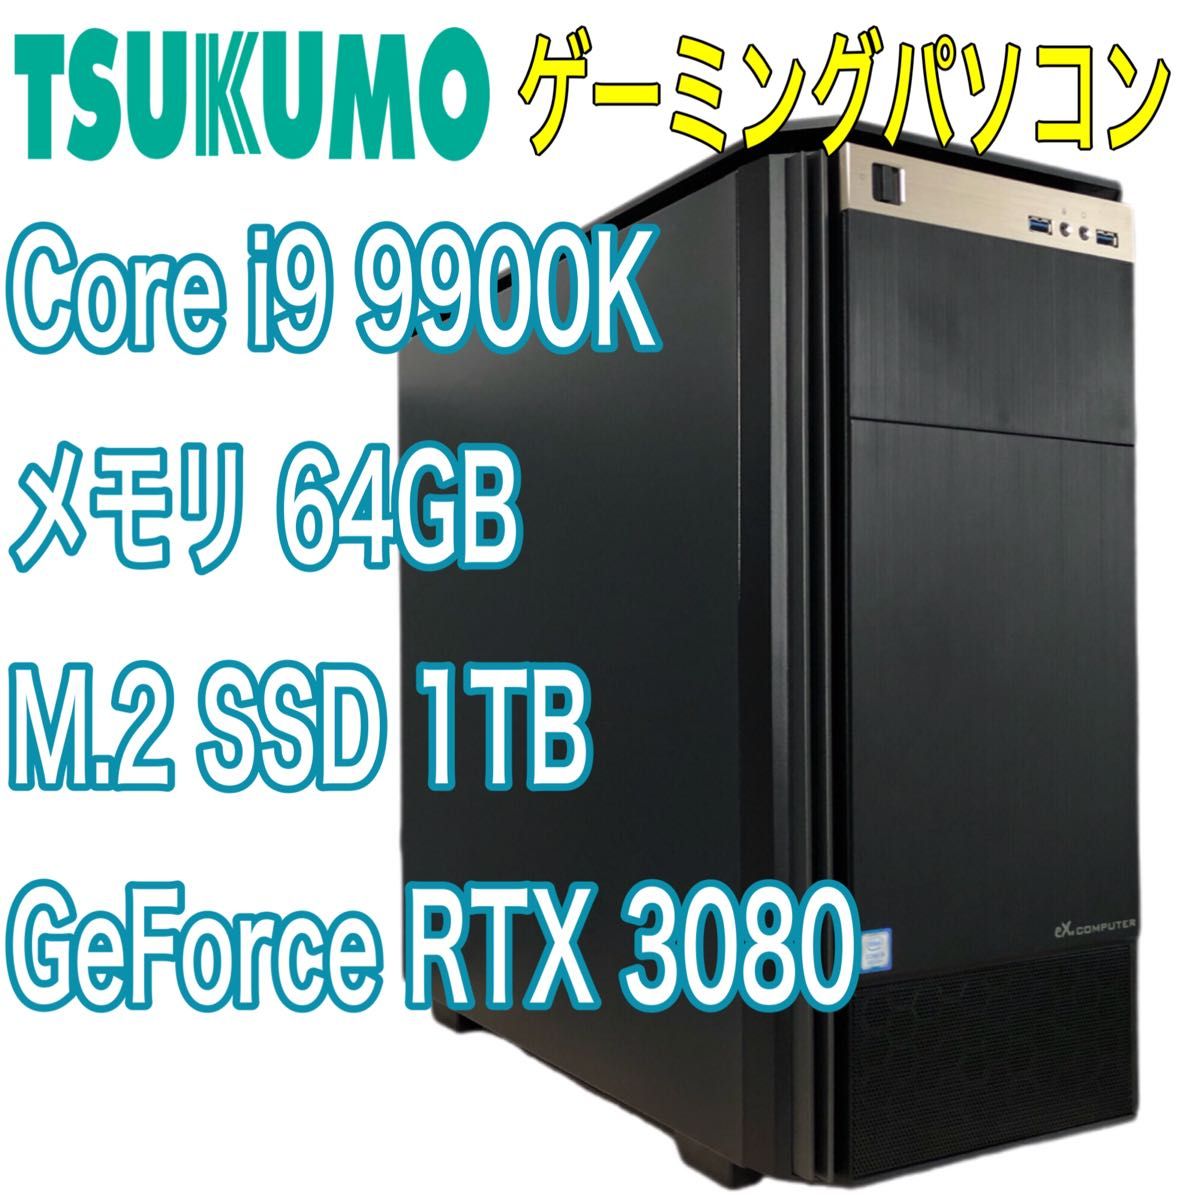 ツクモ電機 ゲーミングパソコンCorei9 9900K RTX3080 メモリ64GB